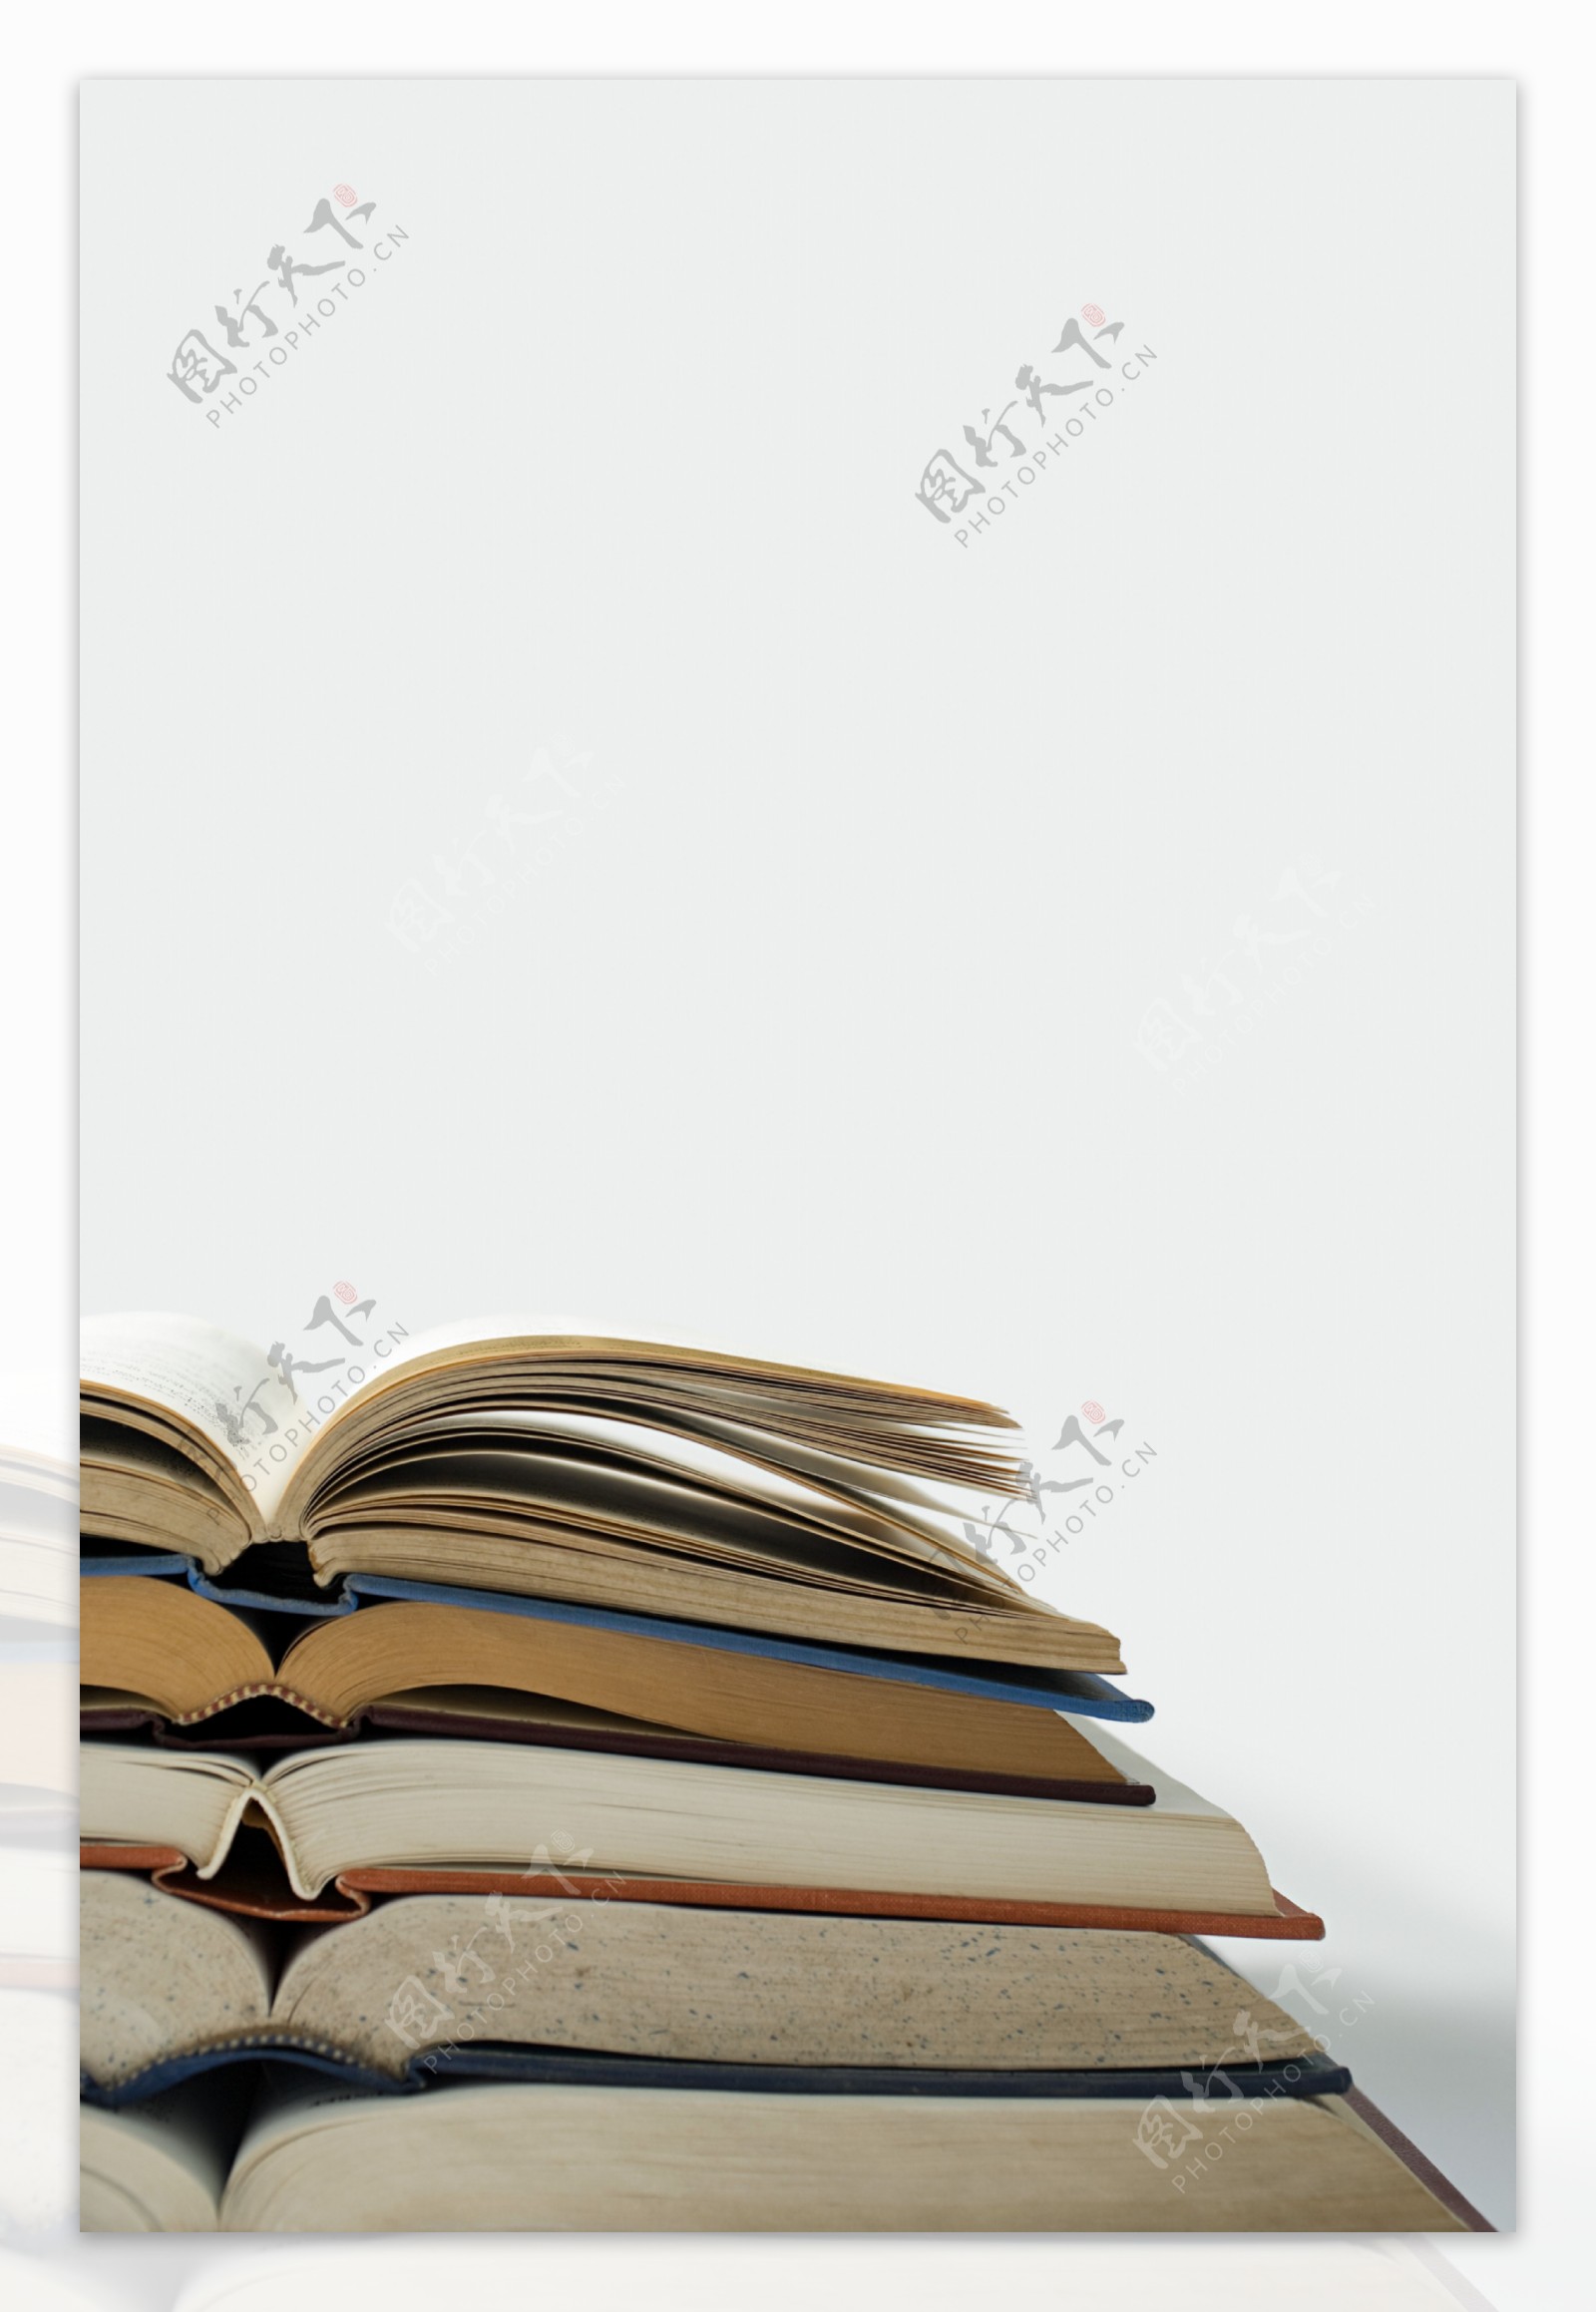 翻开的书籍摞在一起图片